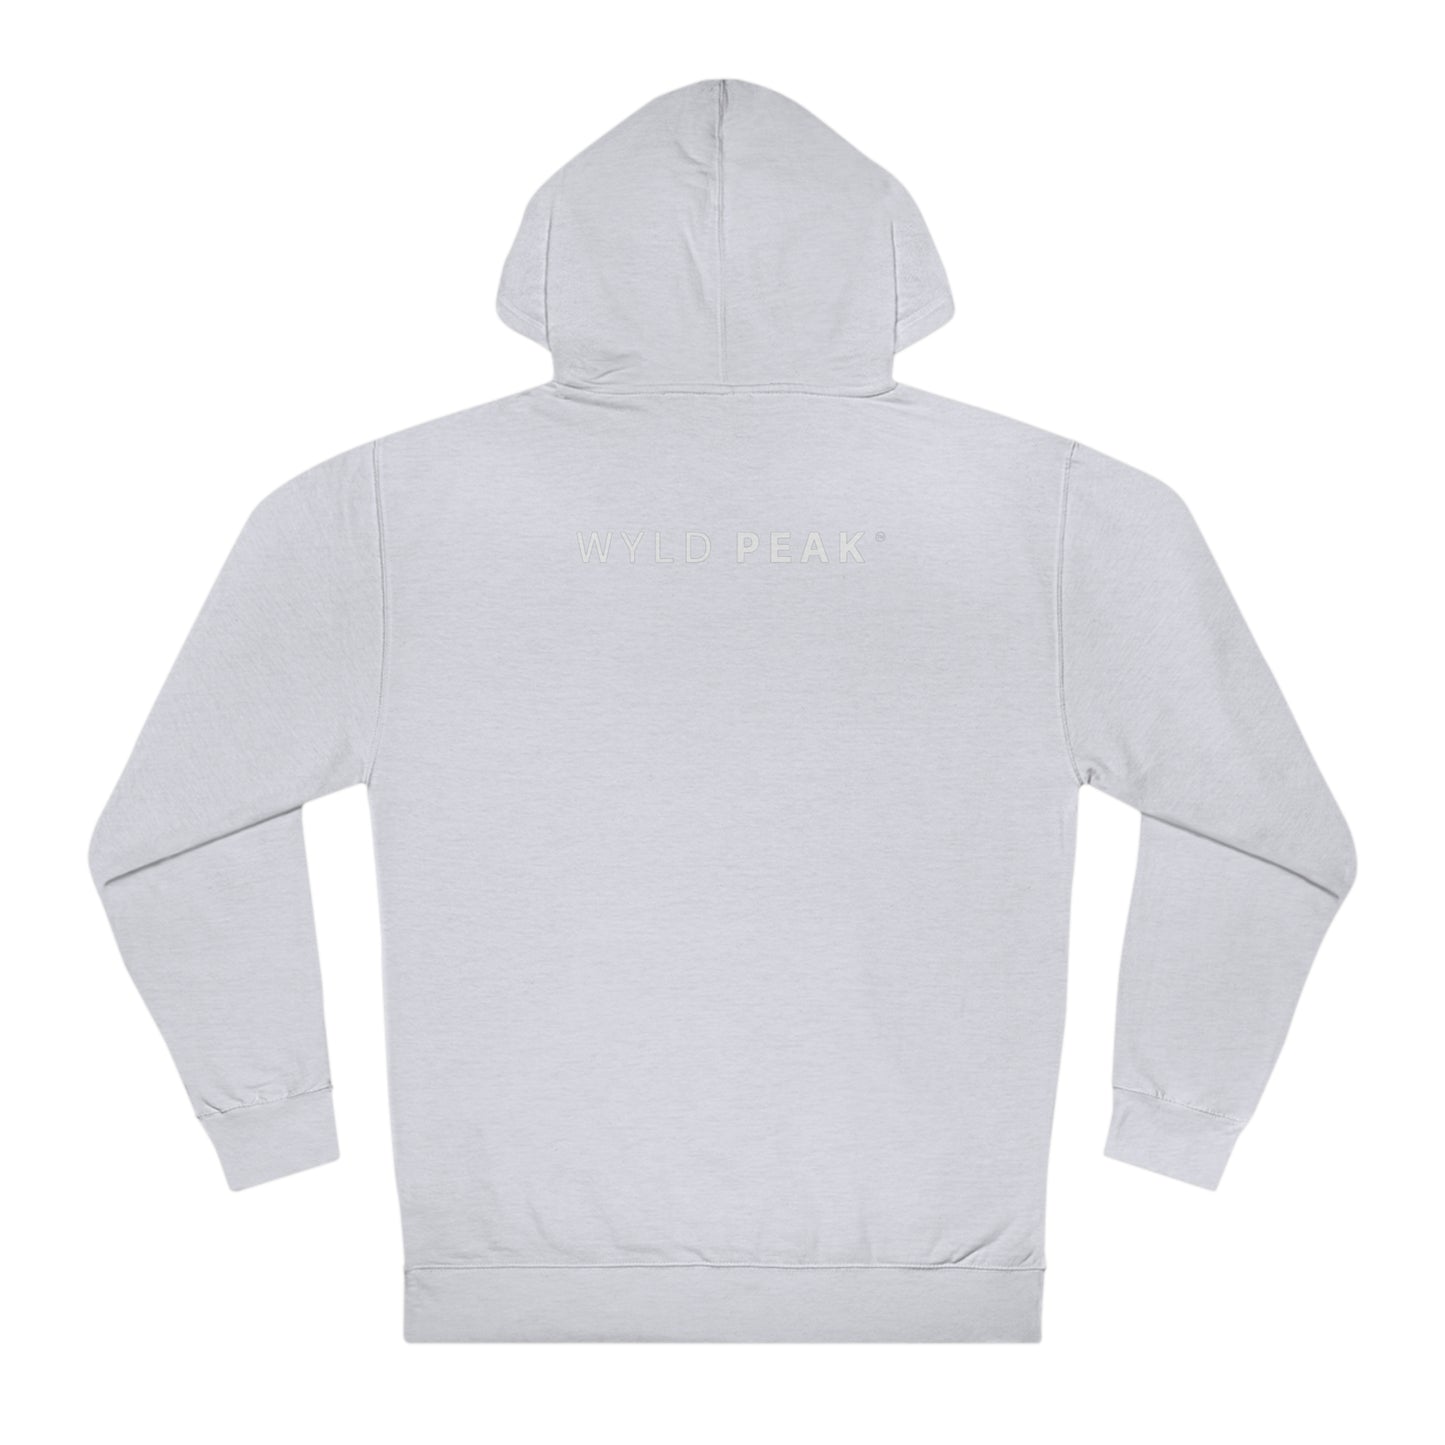 Comfortable and practical unisex hooded sweatshirt